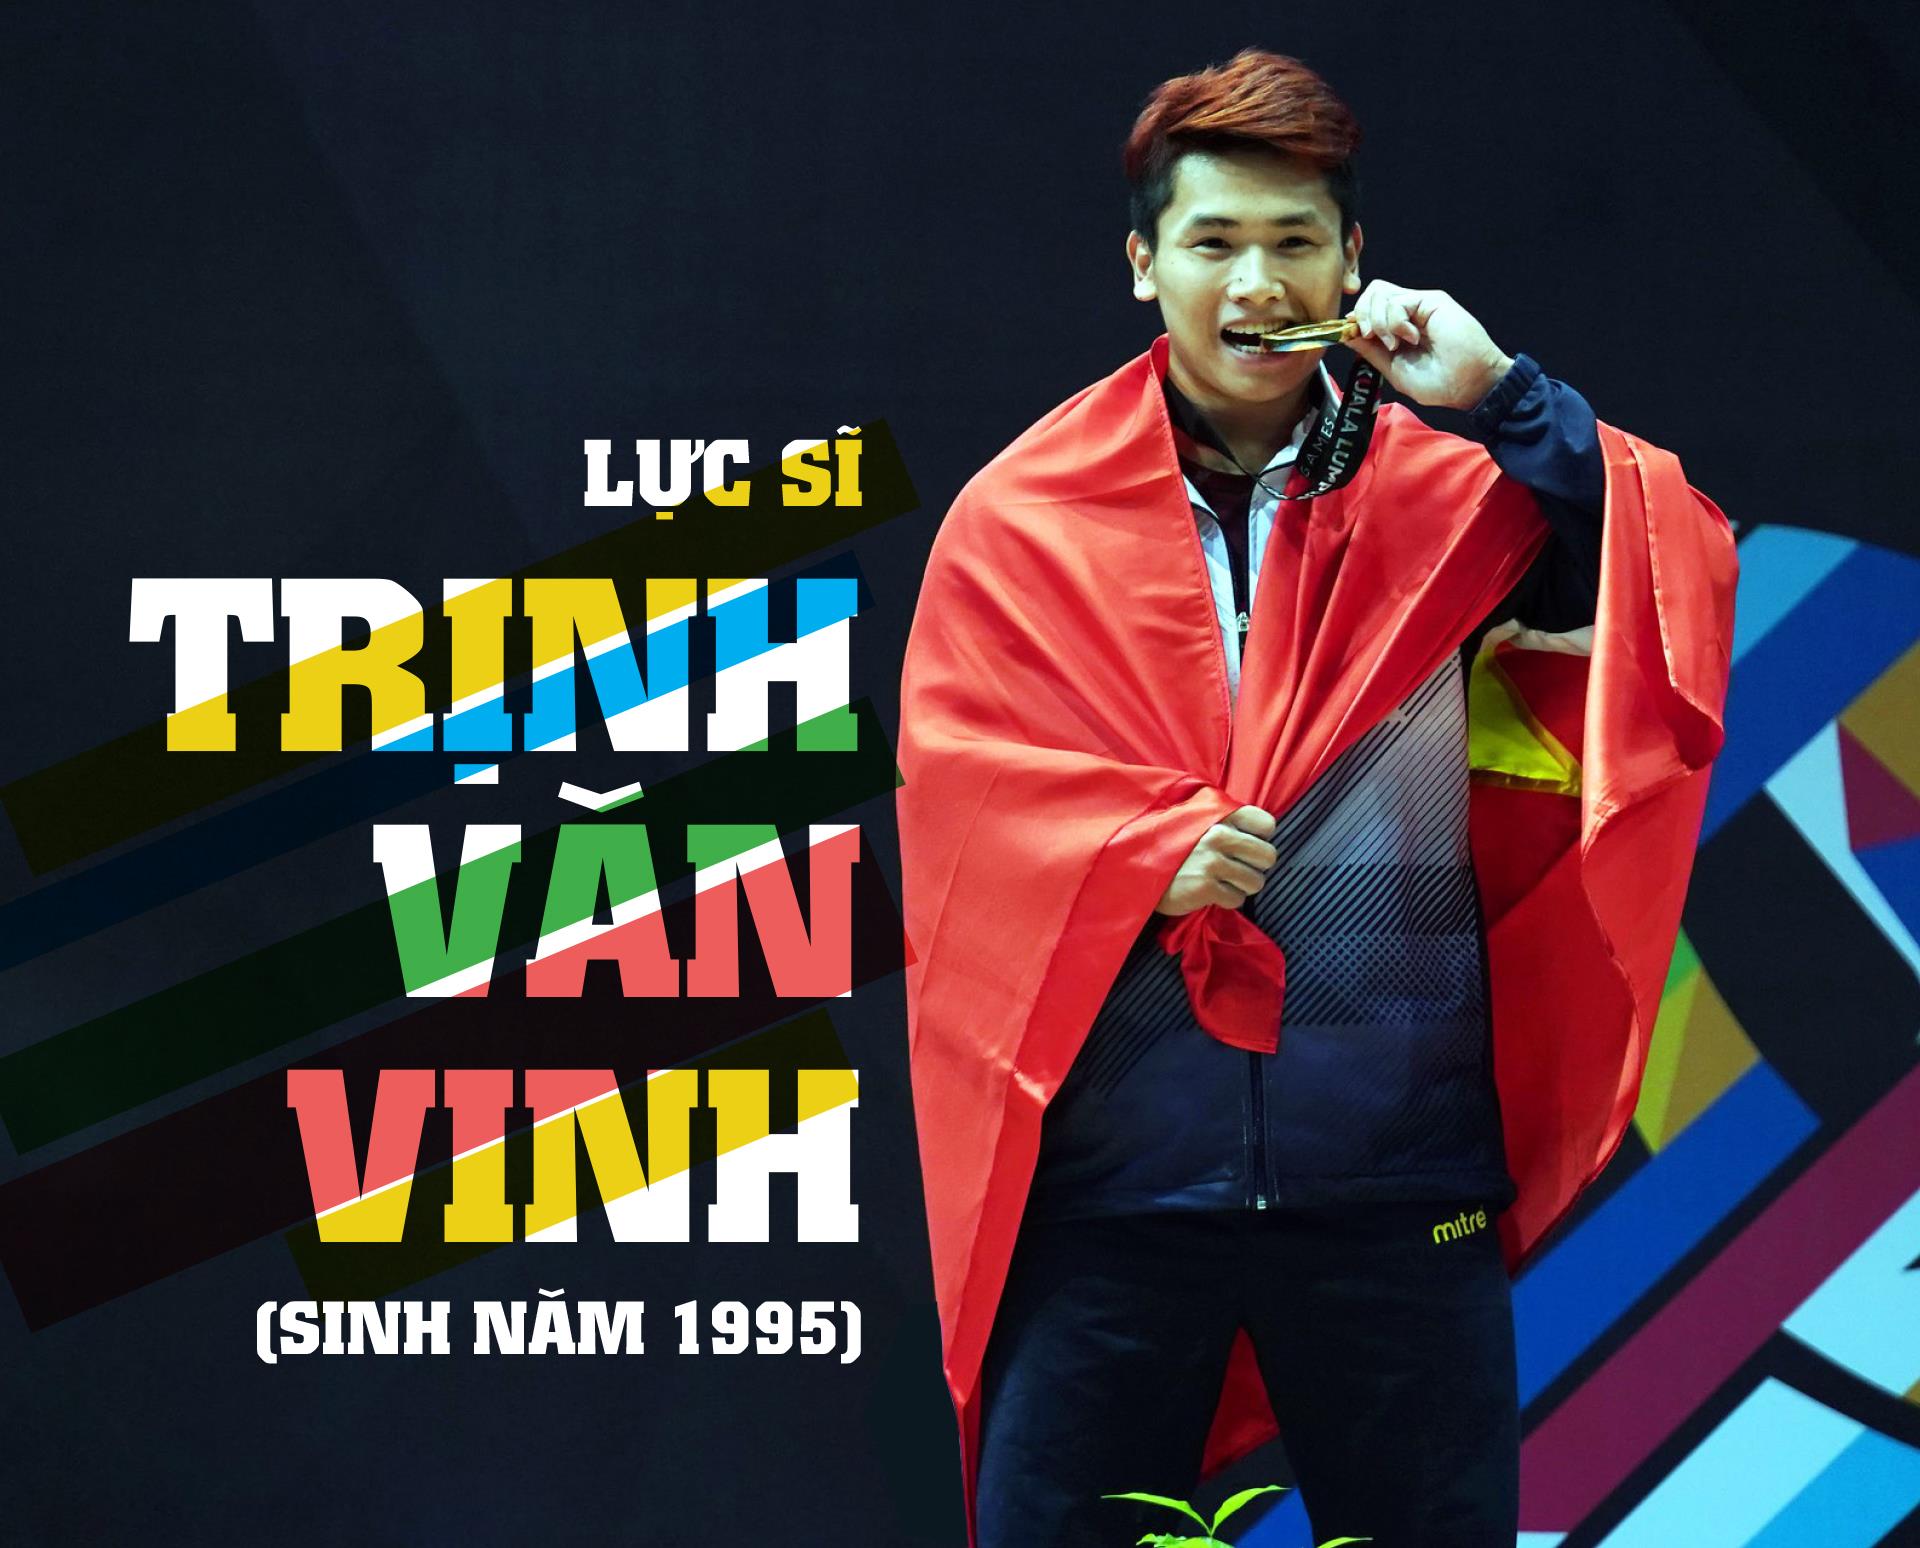 Cú sốc cho cử tạ Việt Nam: Nhà vô địch thế giới Trịnh Văn Vinh dính doping ảnh 2